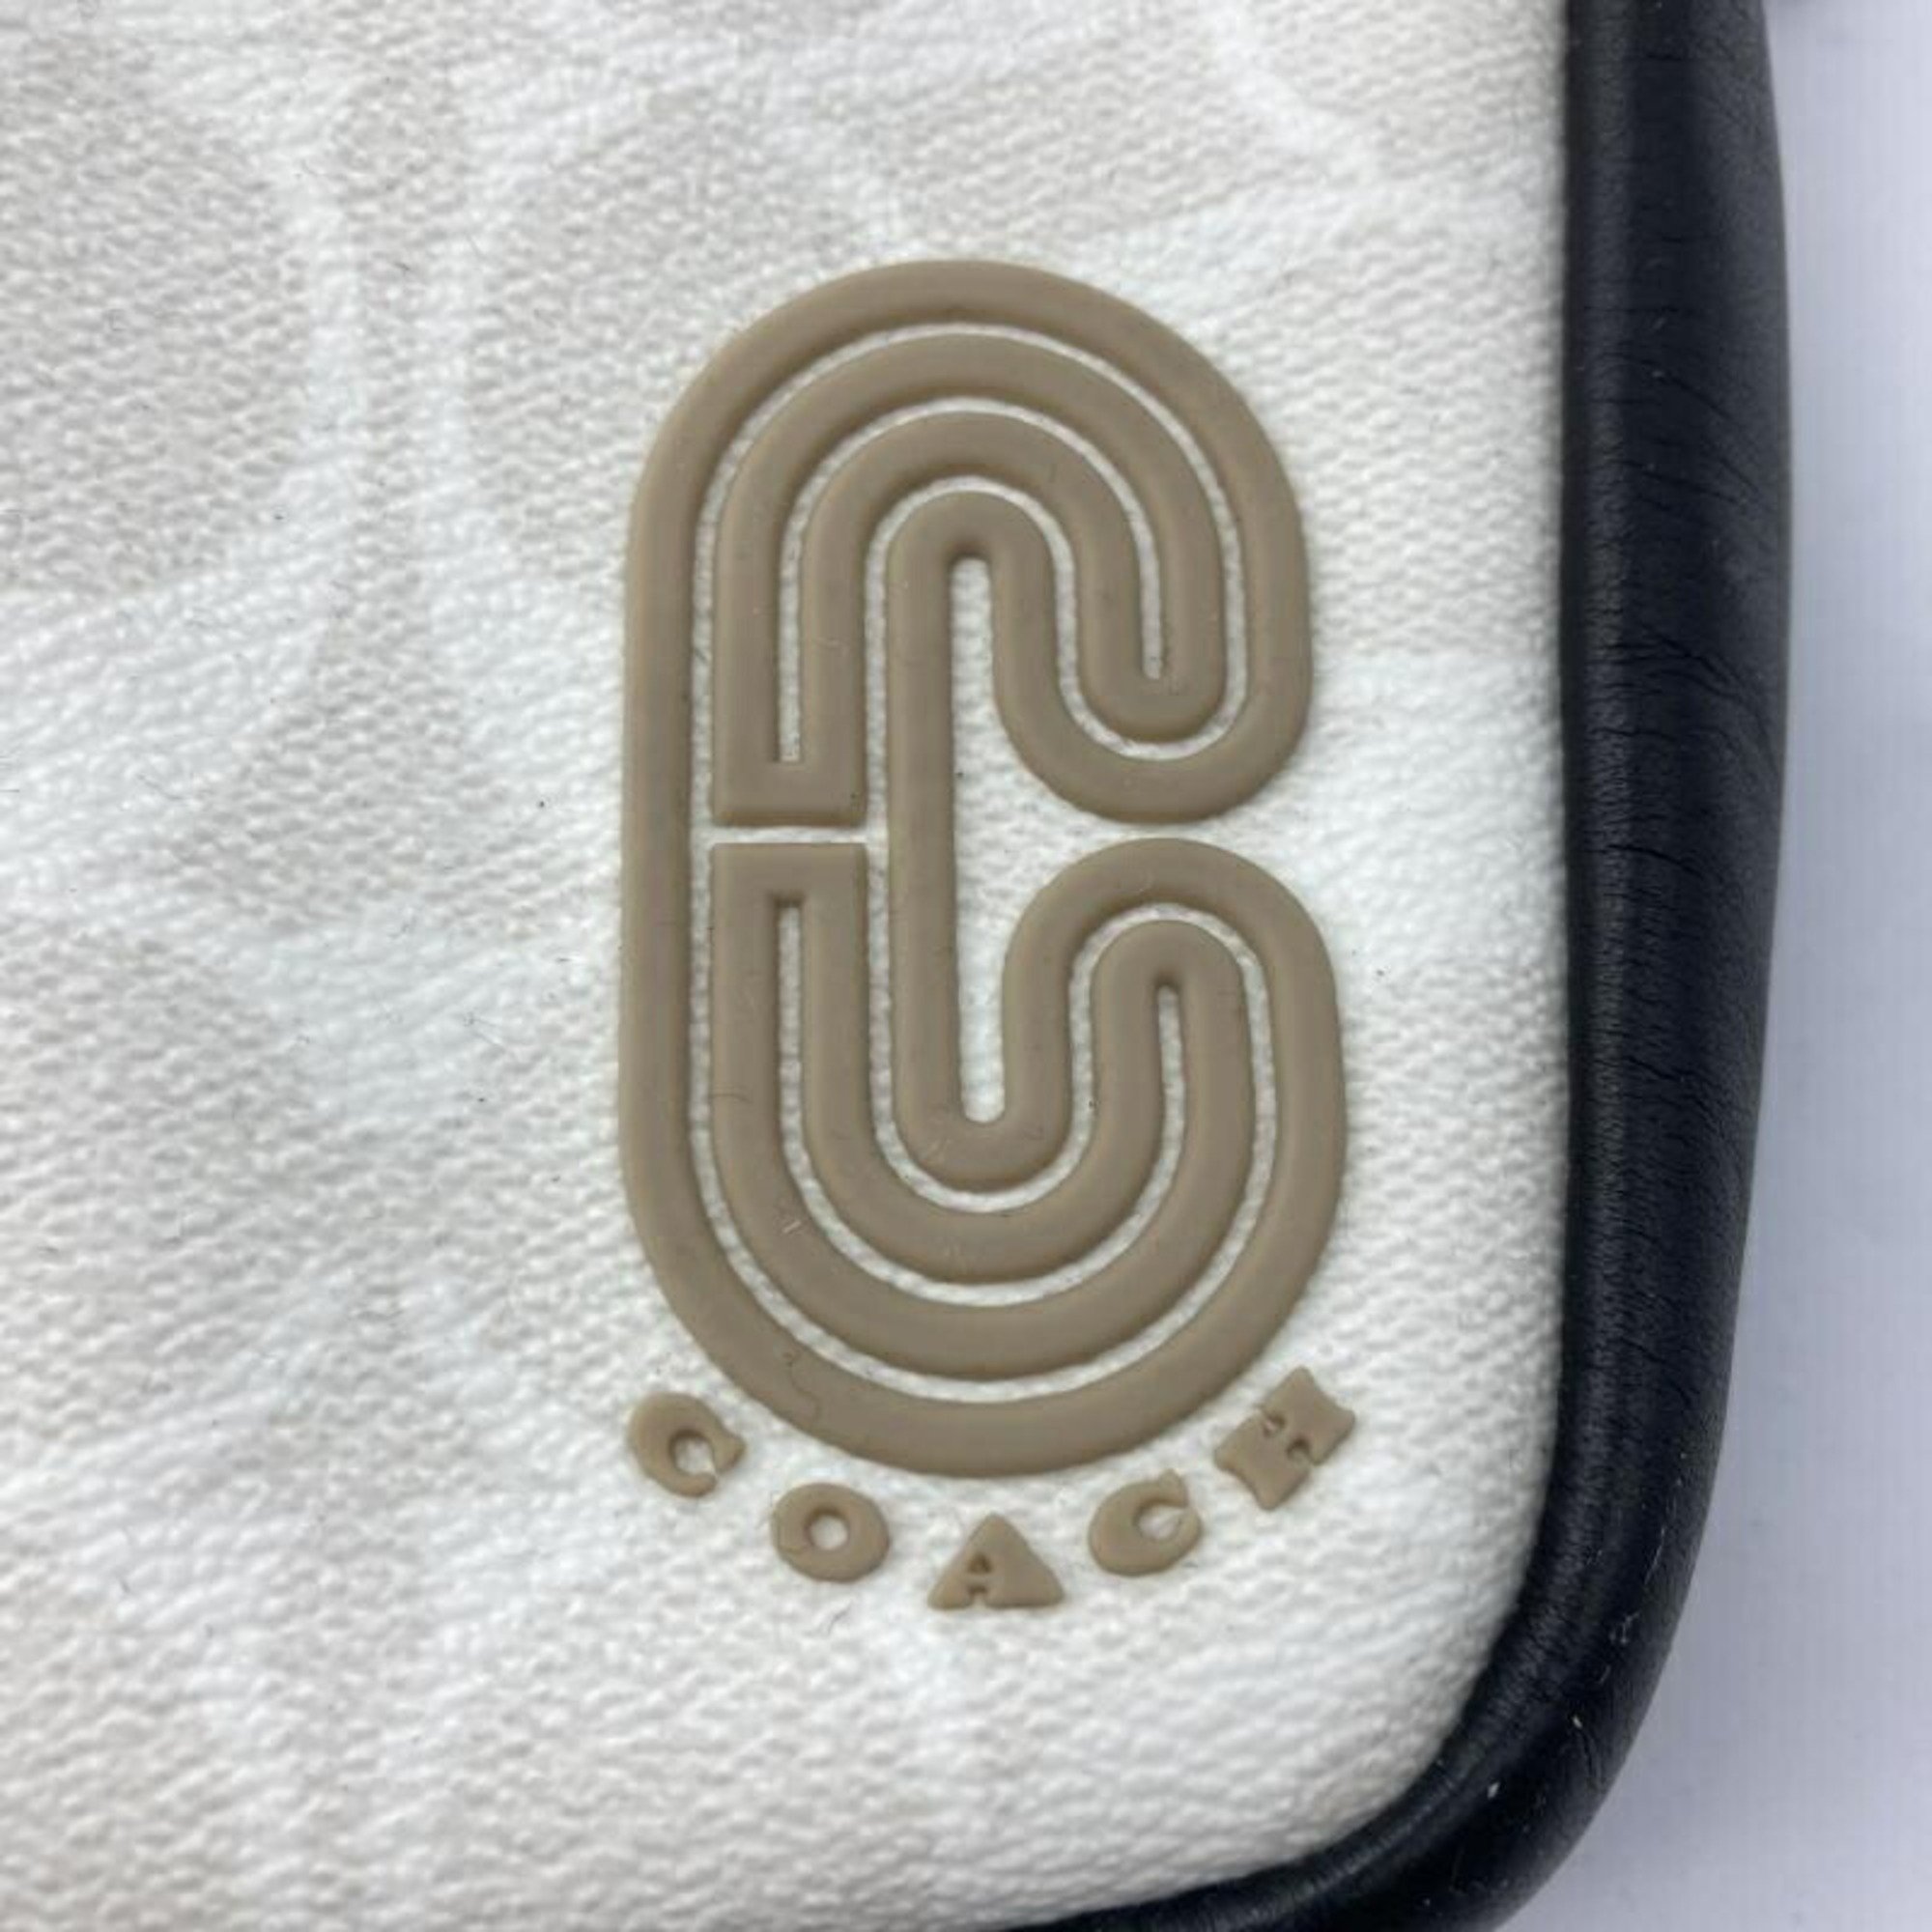 COACH Leather Shoulder Bag C4013 Coach